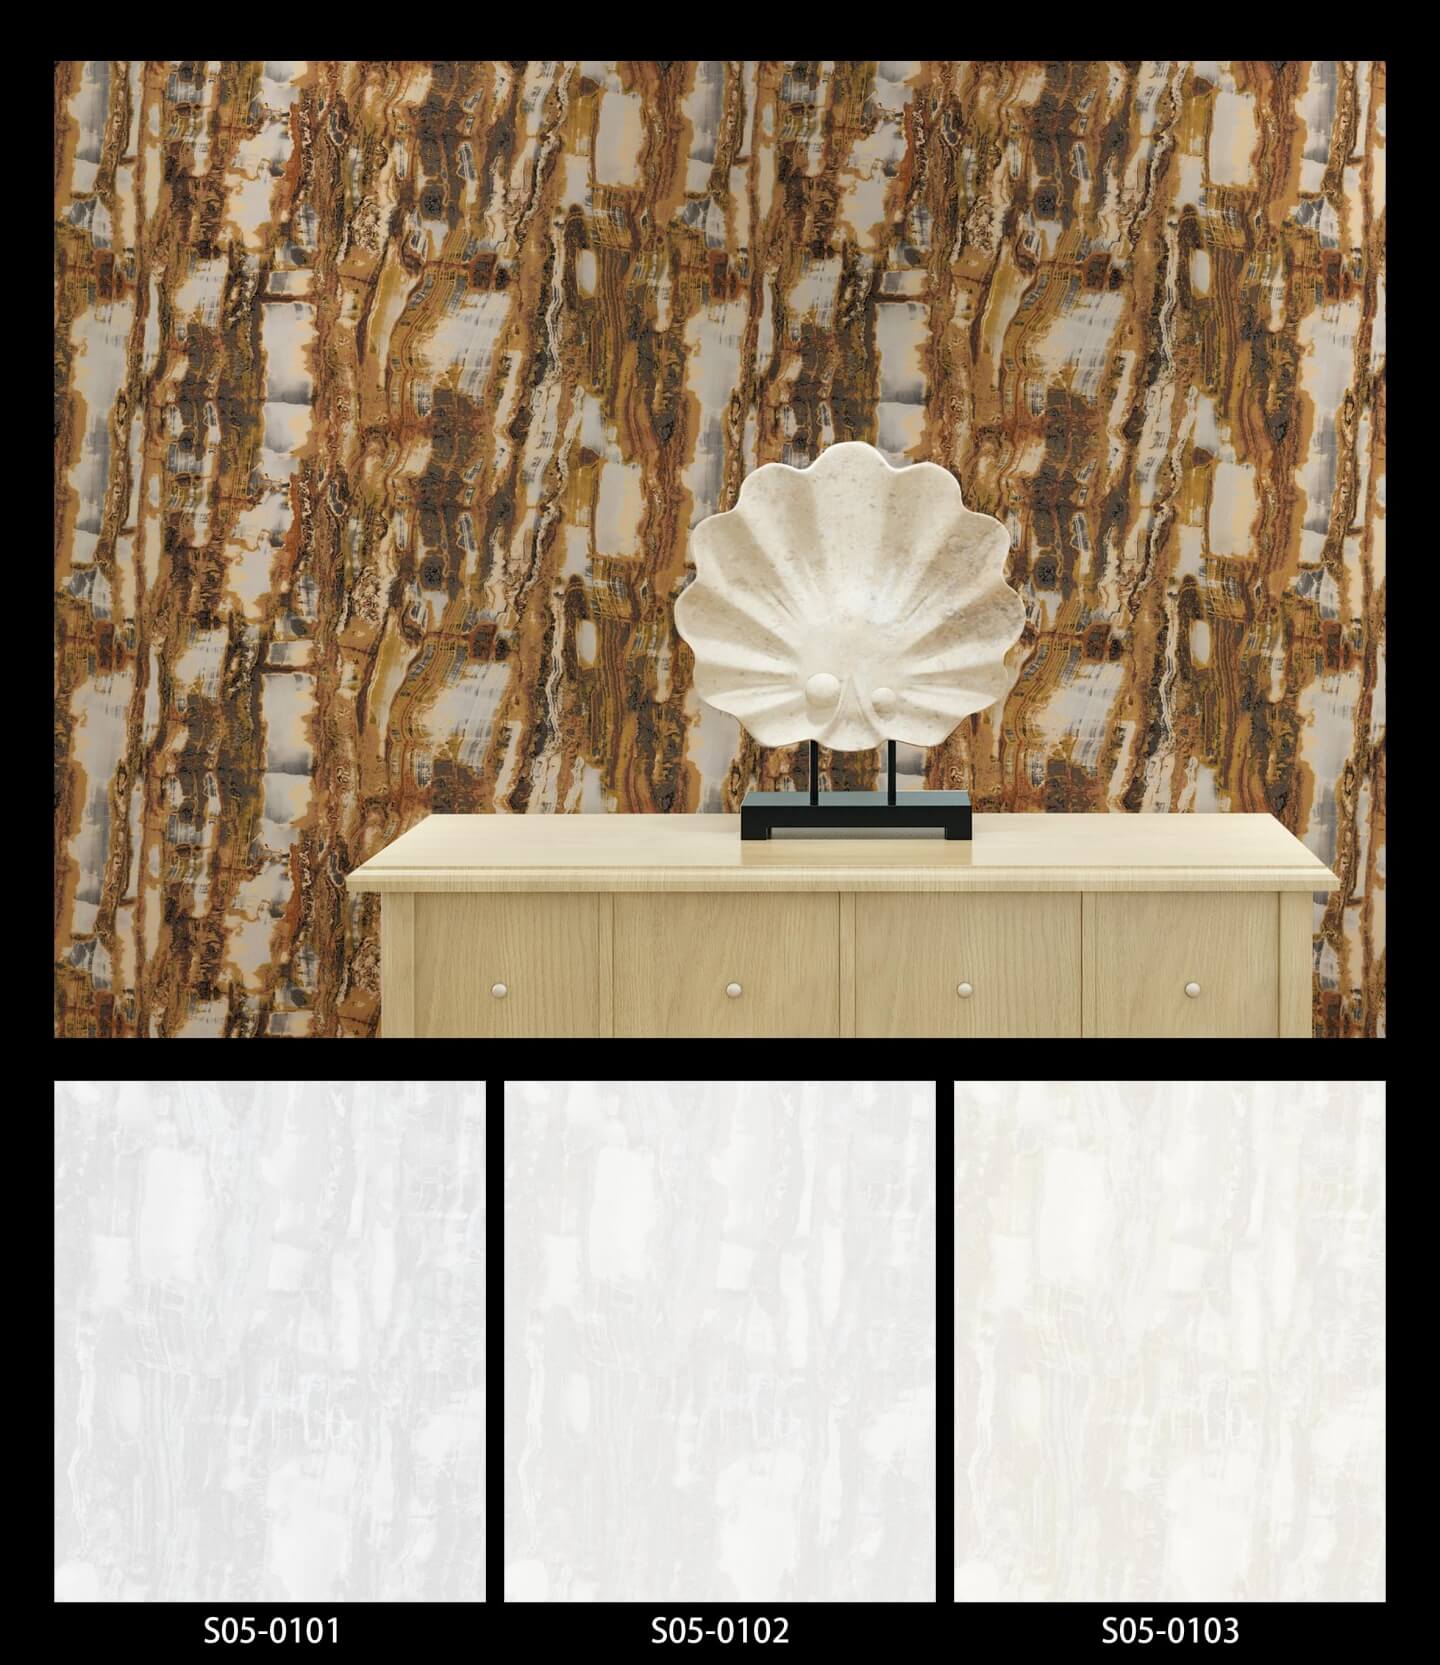 3d Wallpaper Designs For Living Room 